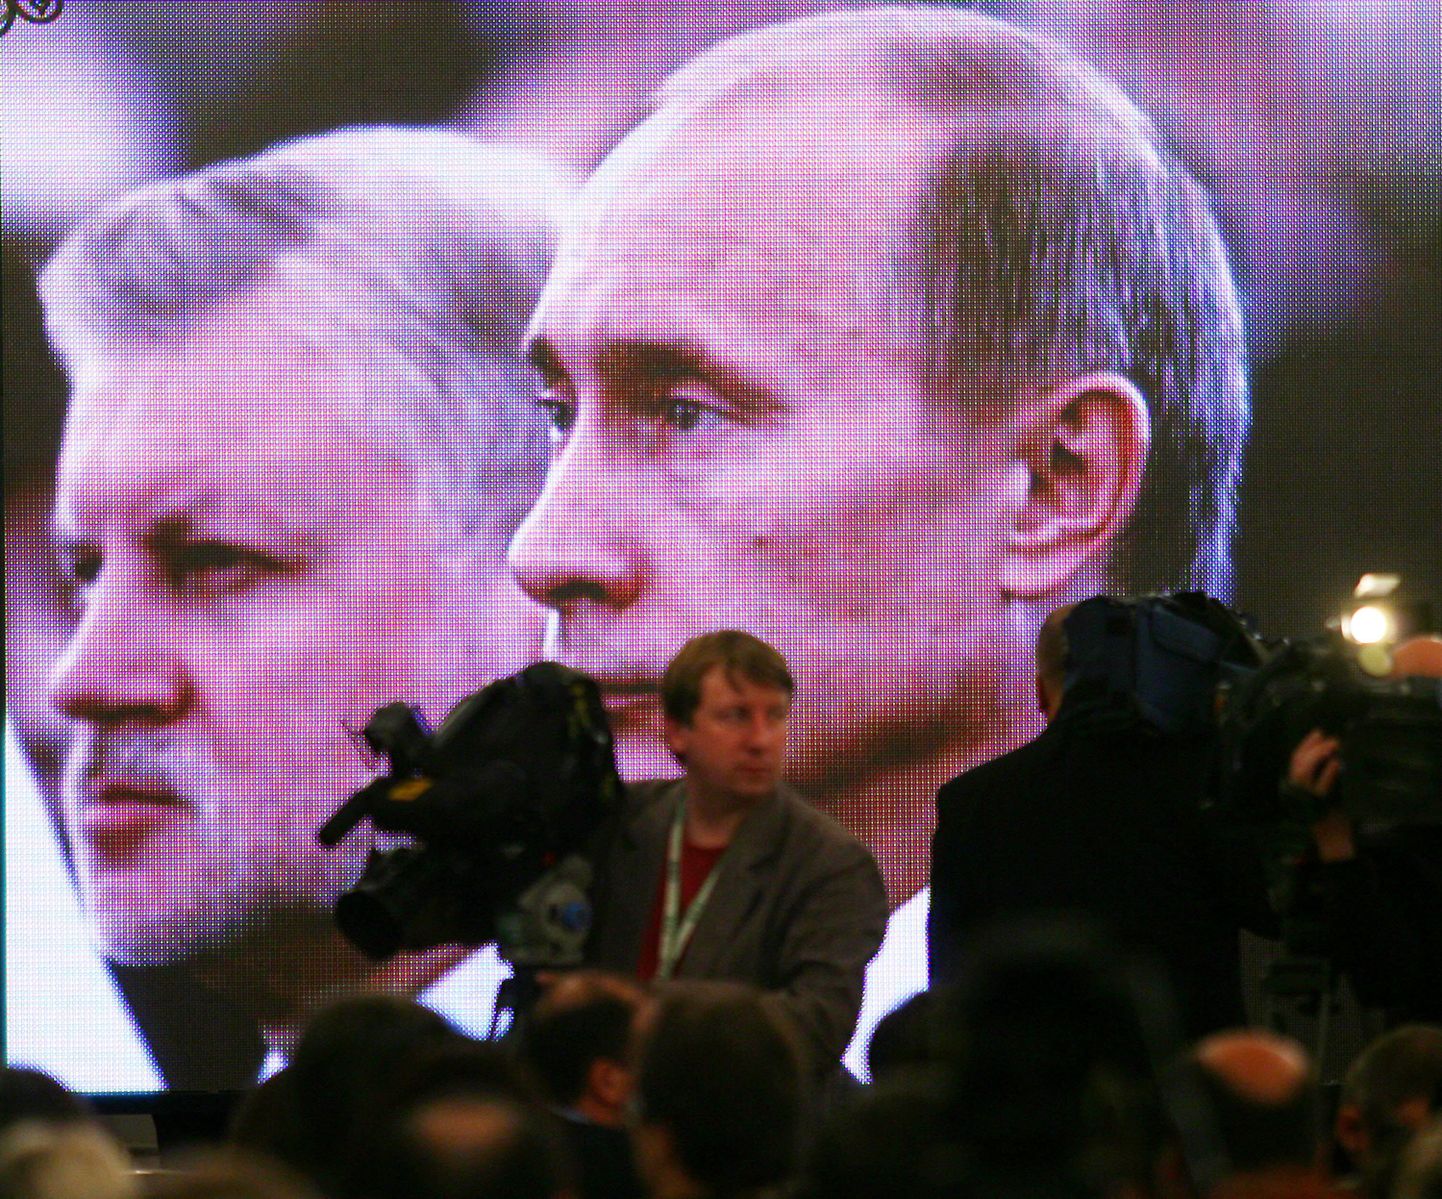 Kremli saali suurel ekraanil võis näha presidendi sõnavõttu kuulamas ka praegust peaministrit Vladimir Putinit, kes kolmandat korda järjest riigipeaks kandideerida ei tohtinud.